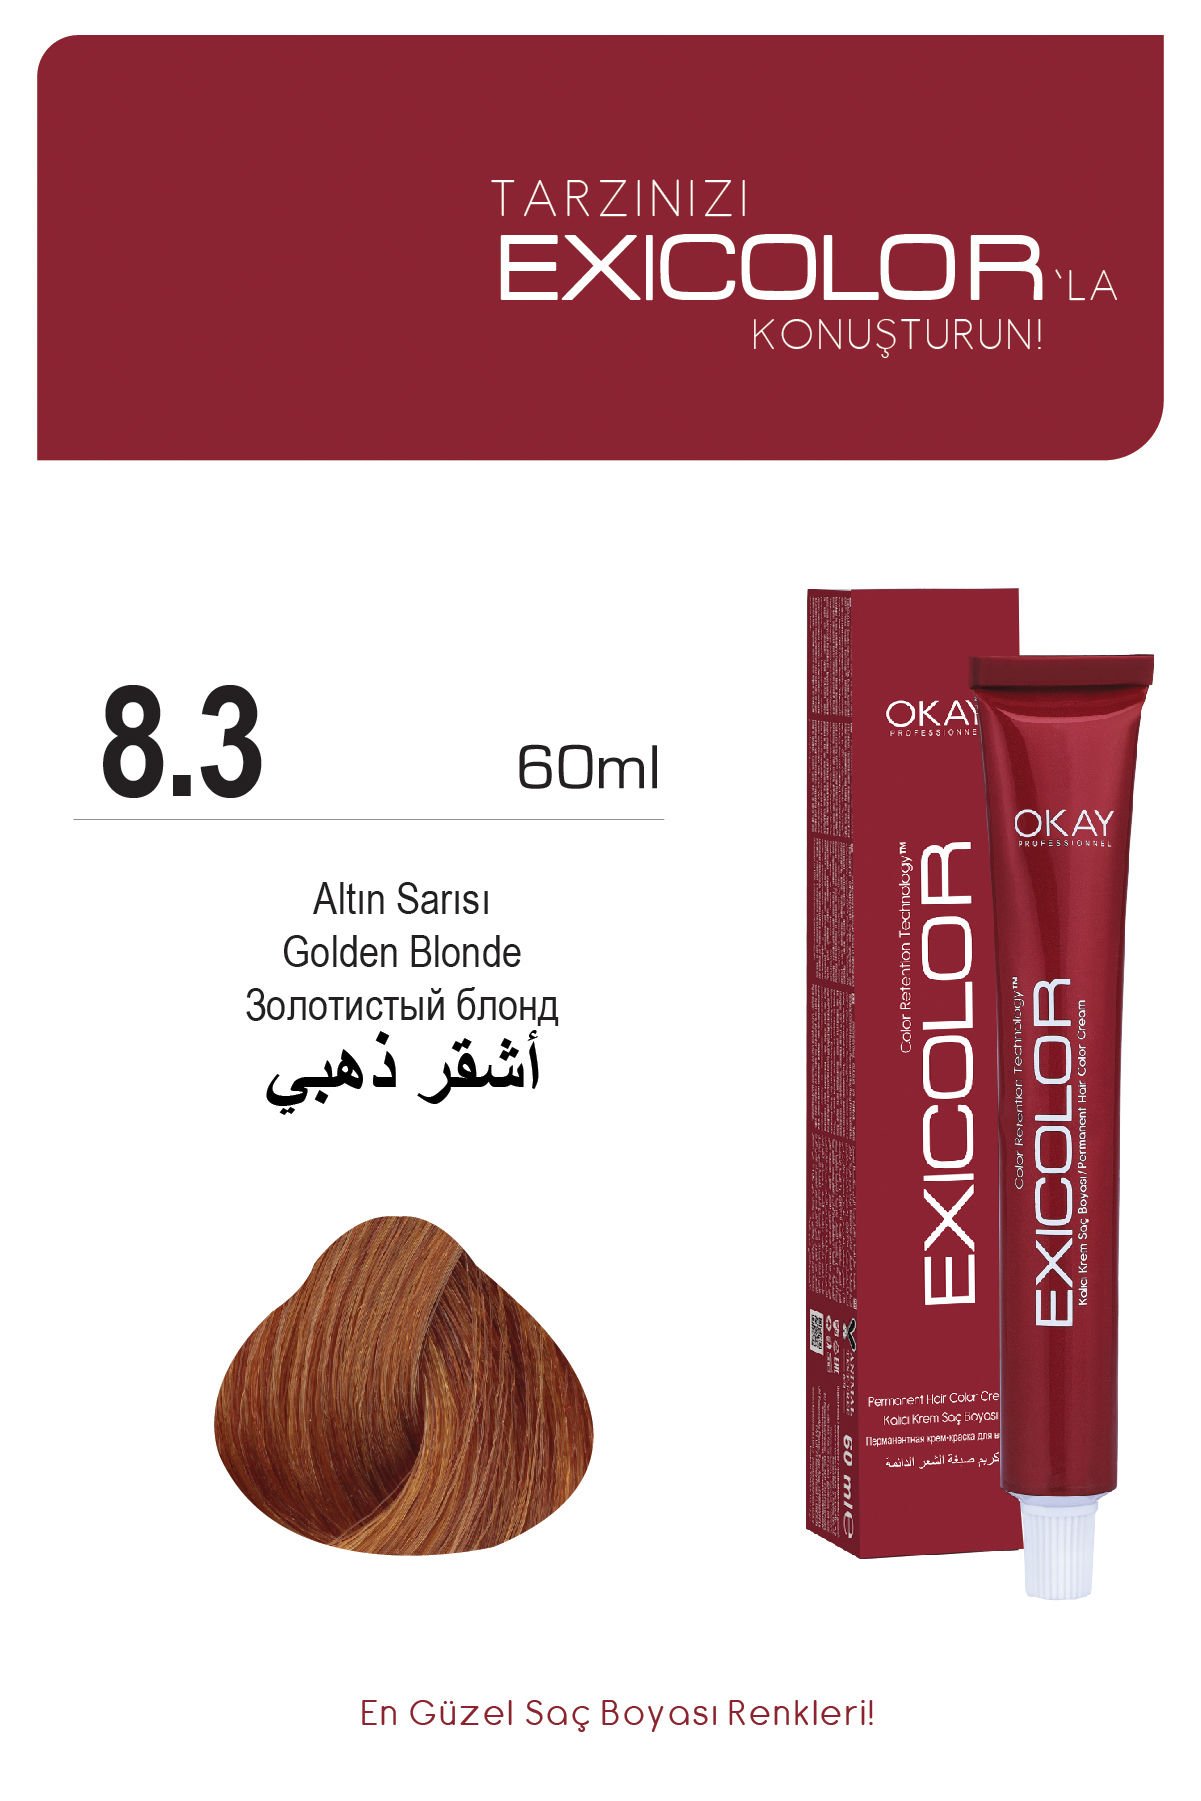 Exicolor 8.3 Altın Sarısı - Kalıcı Krem Saç Boyası 60 ml Tüp